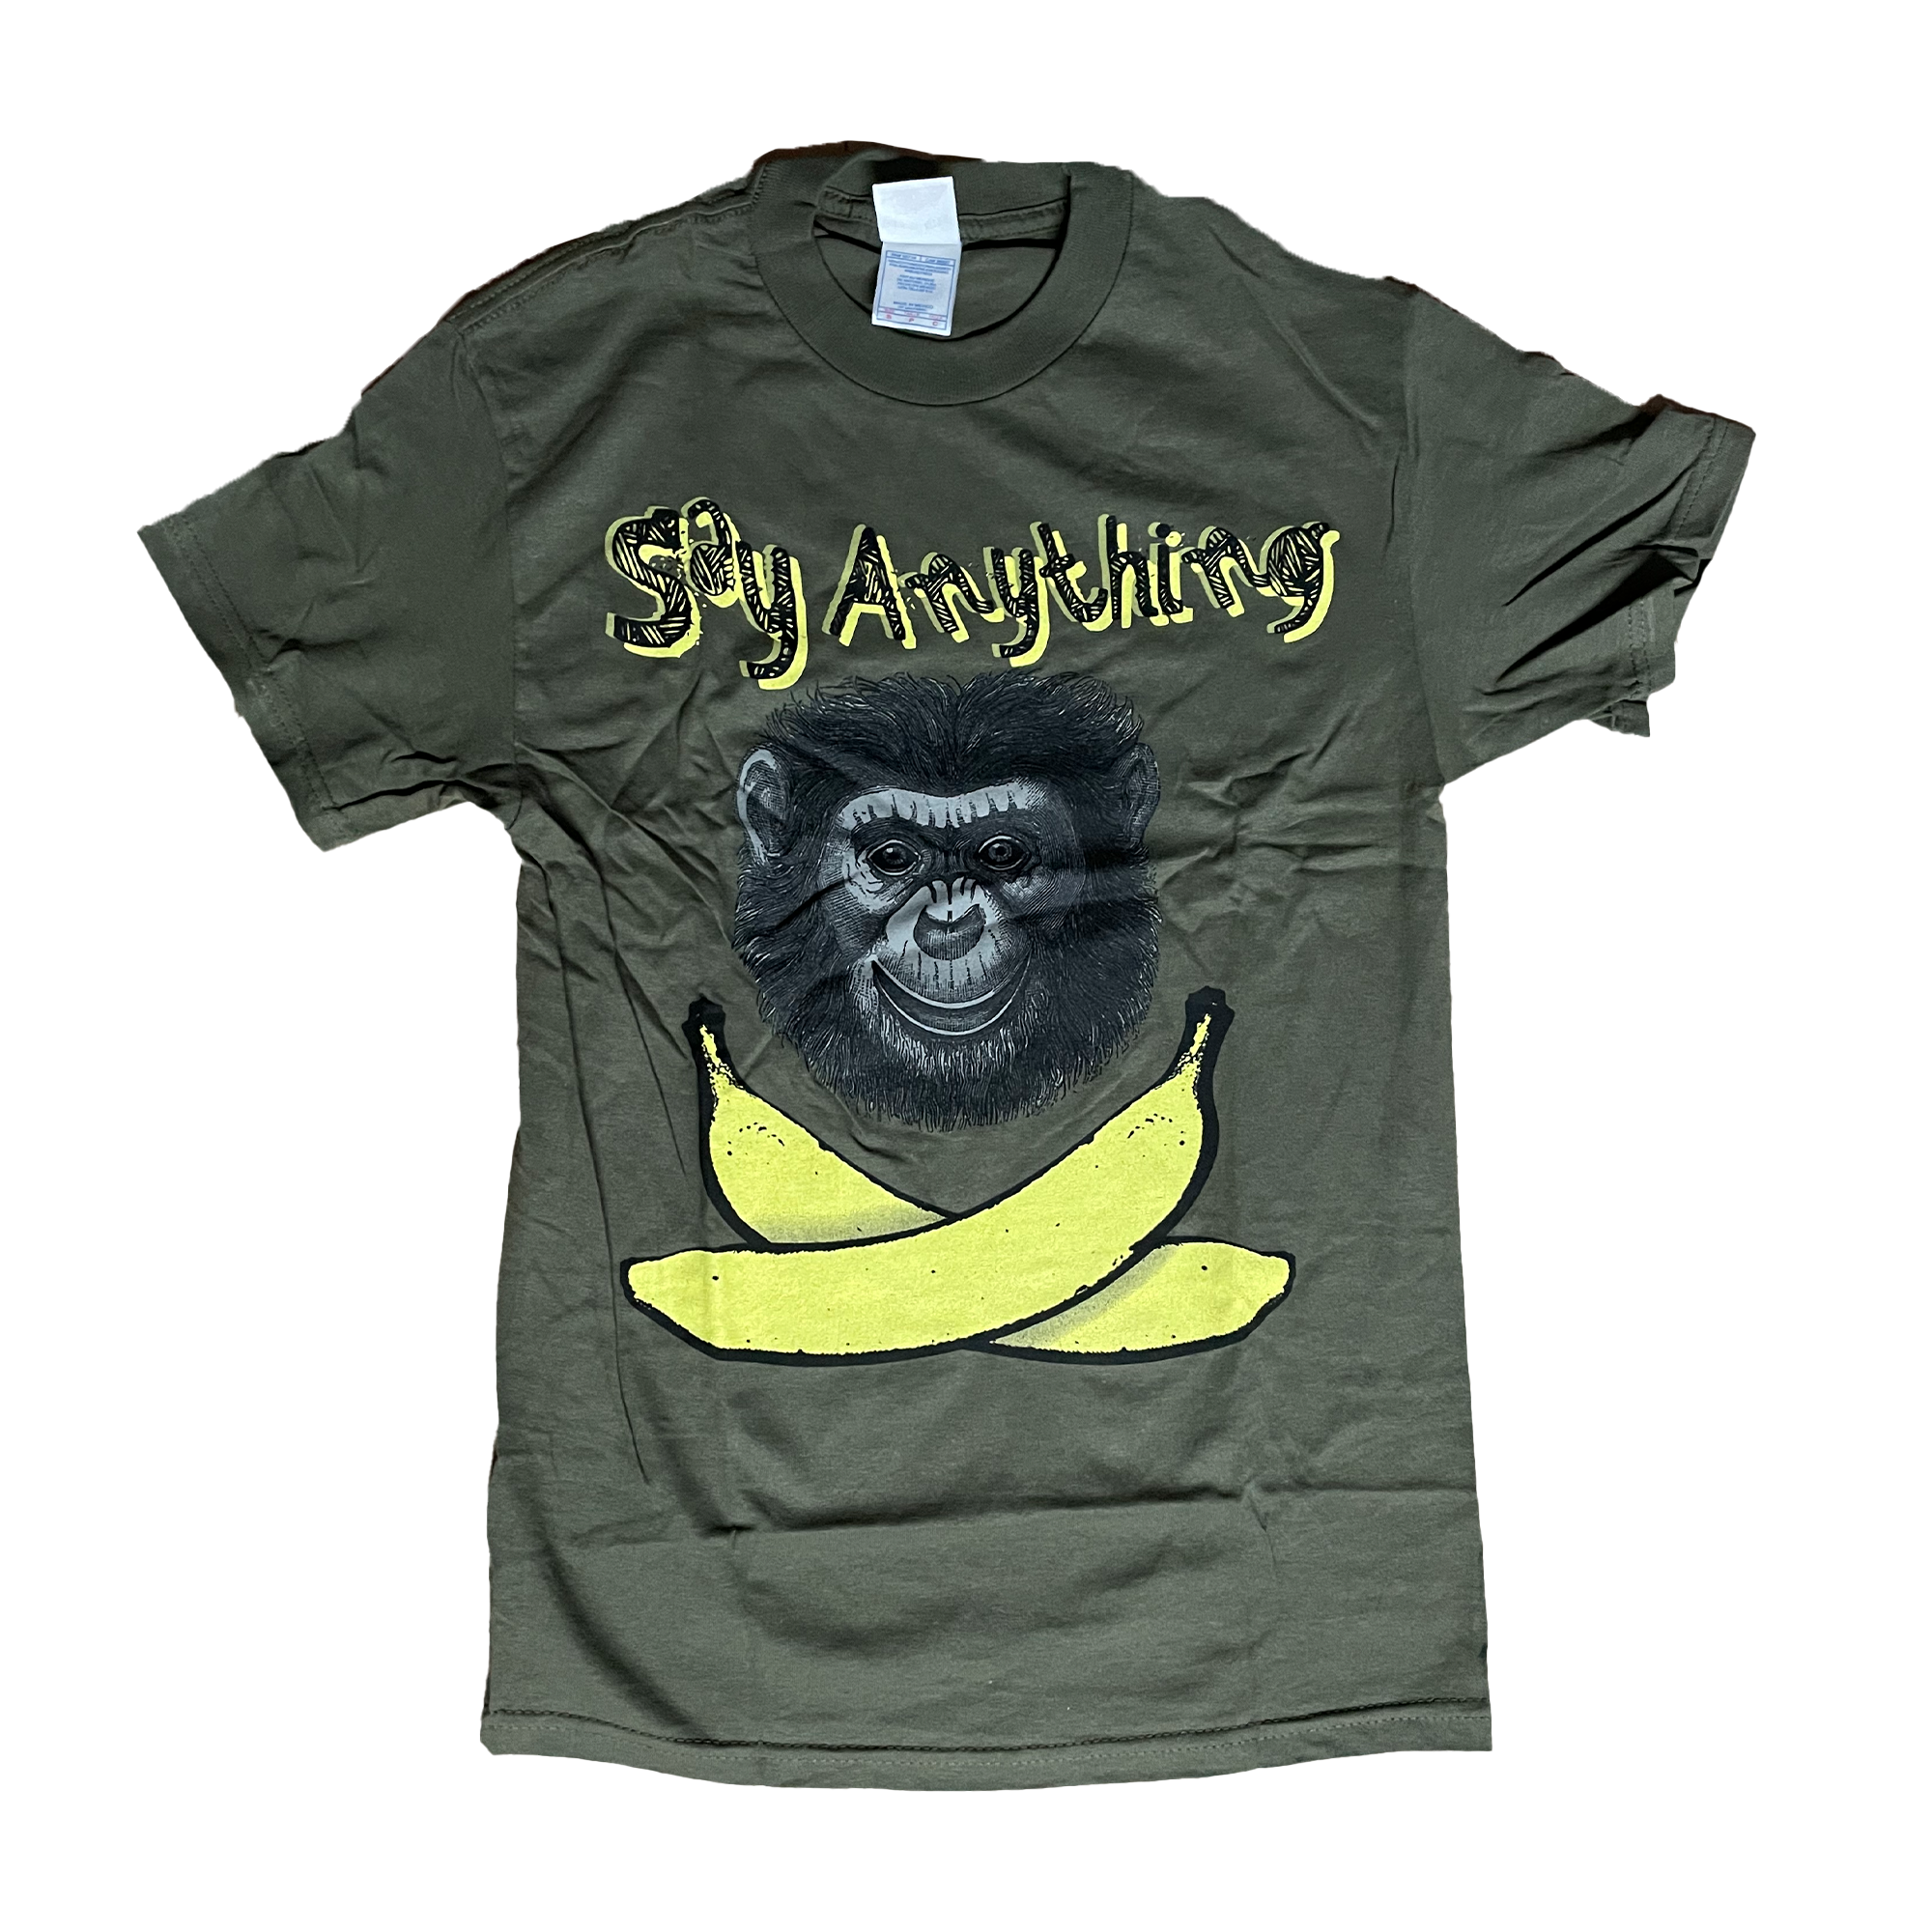 Say Anything - Bananas Shirt